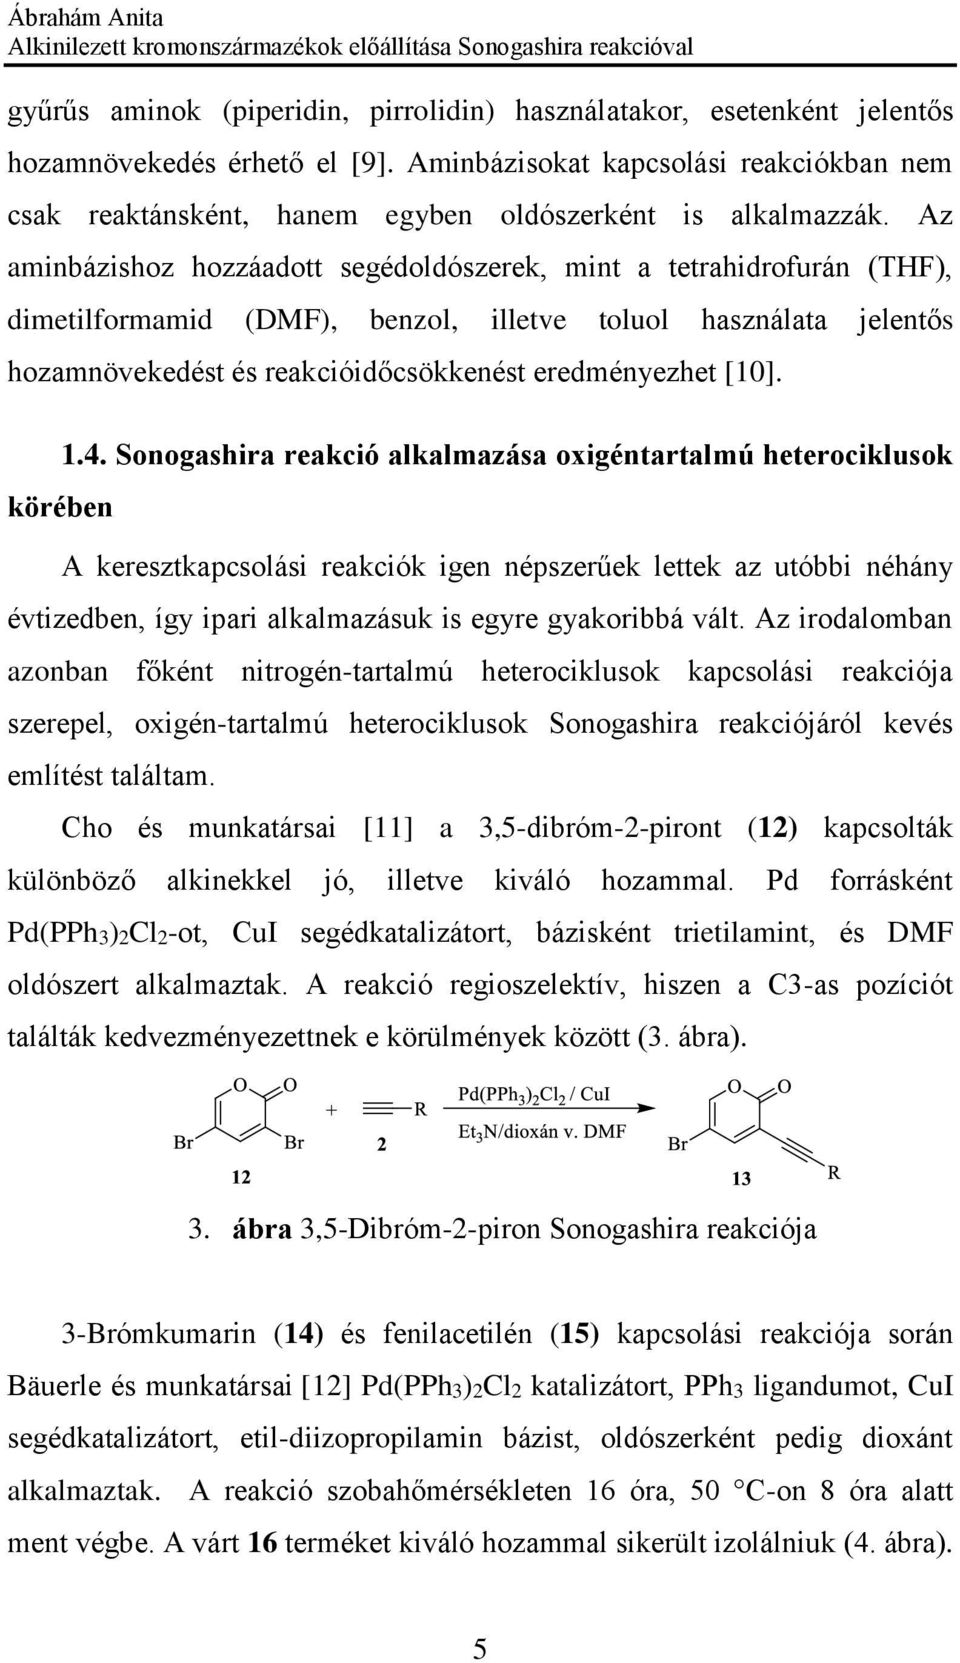 Az aminbázishoz hozzáadott segédoldószerek, mint a tetrahidrofurán (THF), dimetilformamid (DMF), benzol, illetve toluol használata jelentős hozamnövekedést és reakcióidőcsökkenést eredményezhet [10].